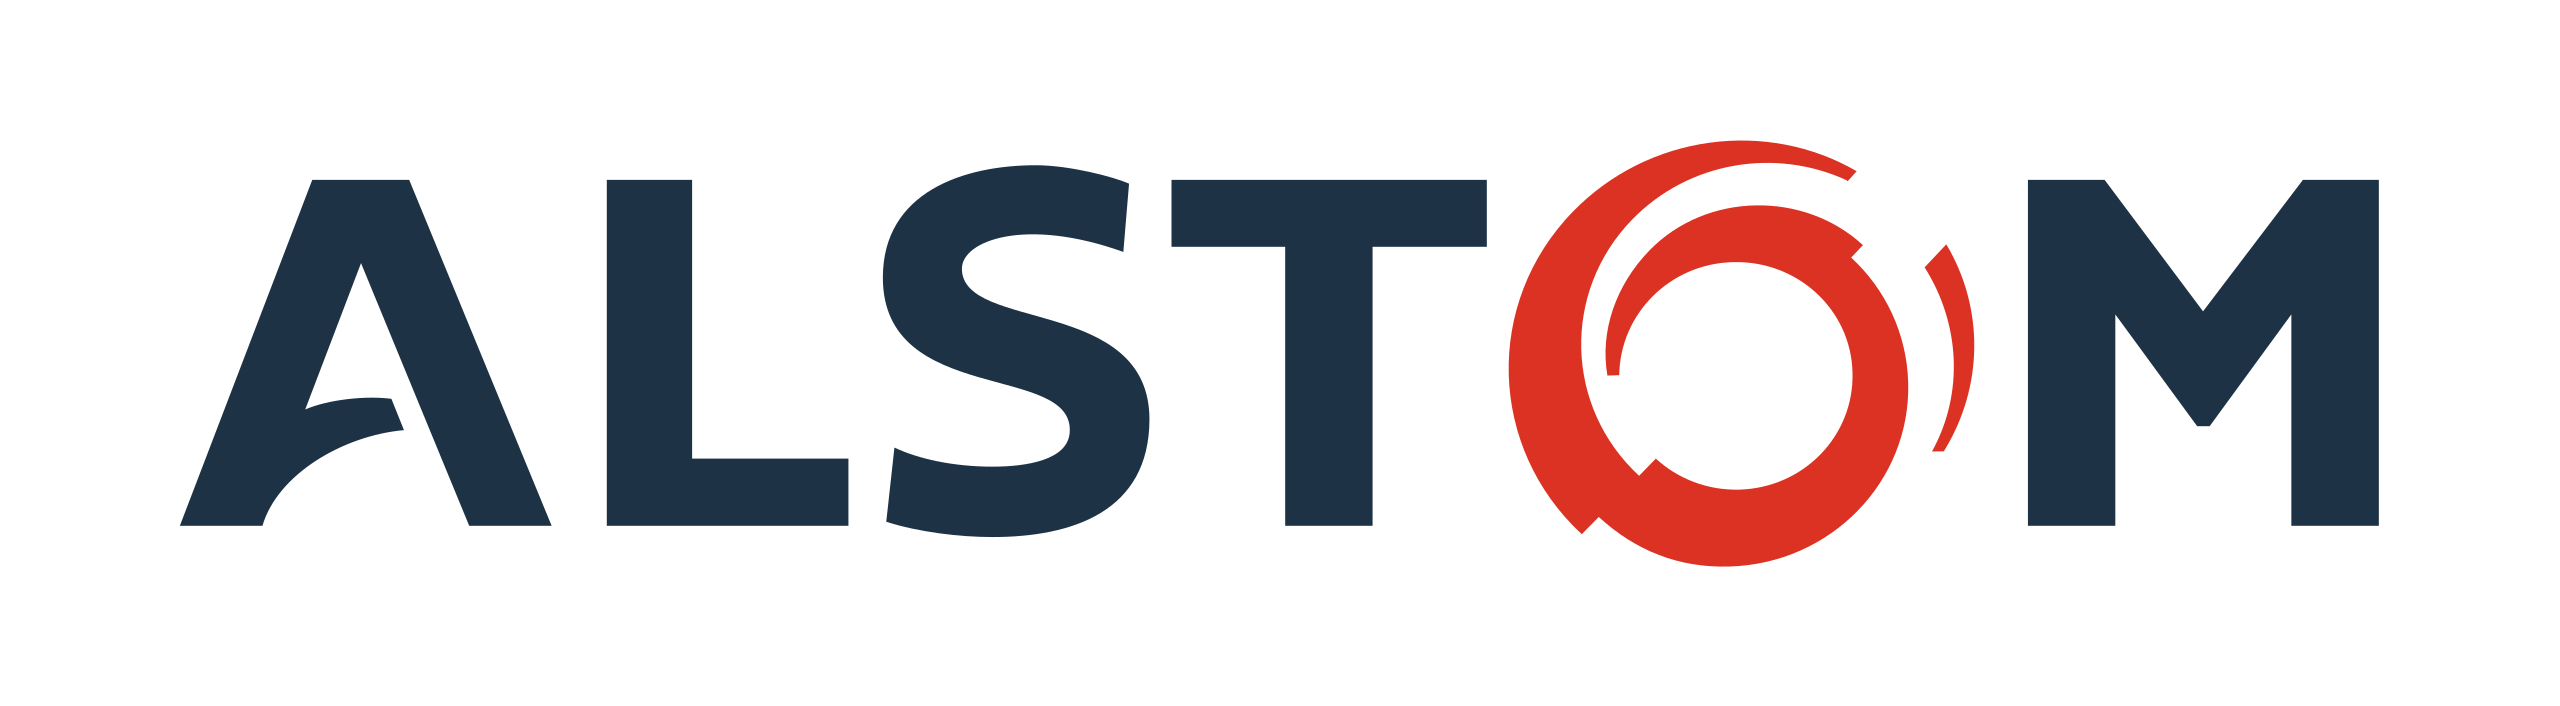 Alstom_logo-cliente-lm-marketplace